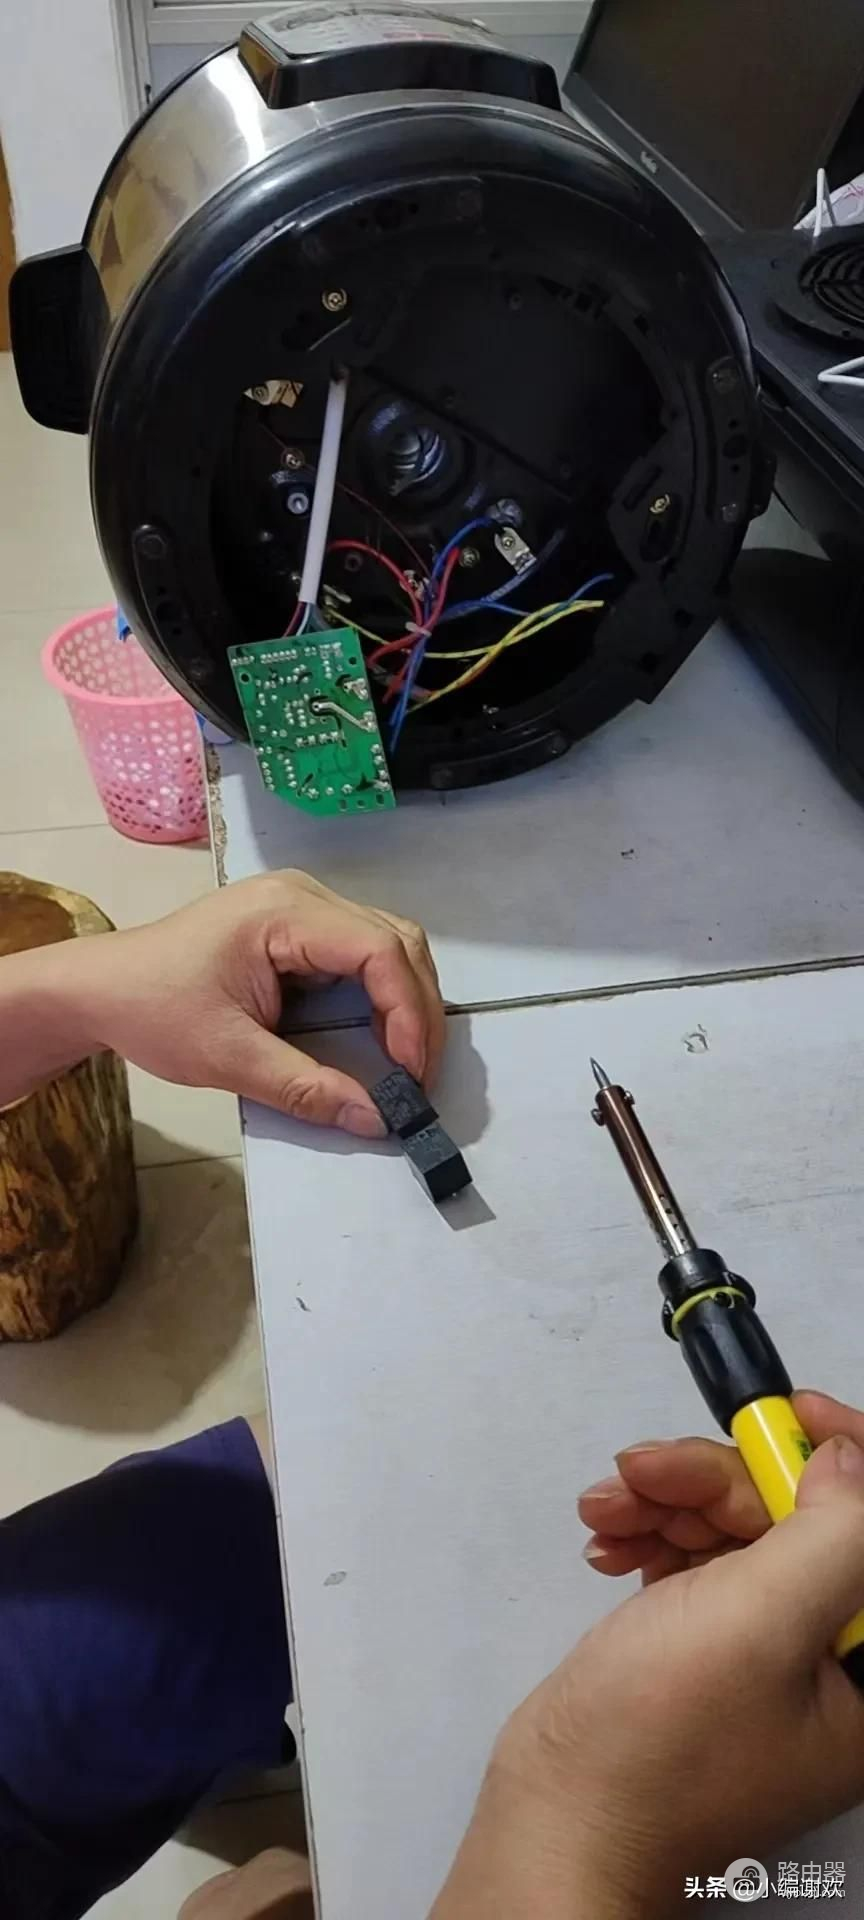 太特别了！粉丝要求修电脑的小编修电饭锅，没万能表怎么修电饭锅